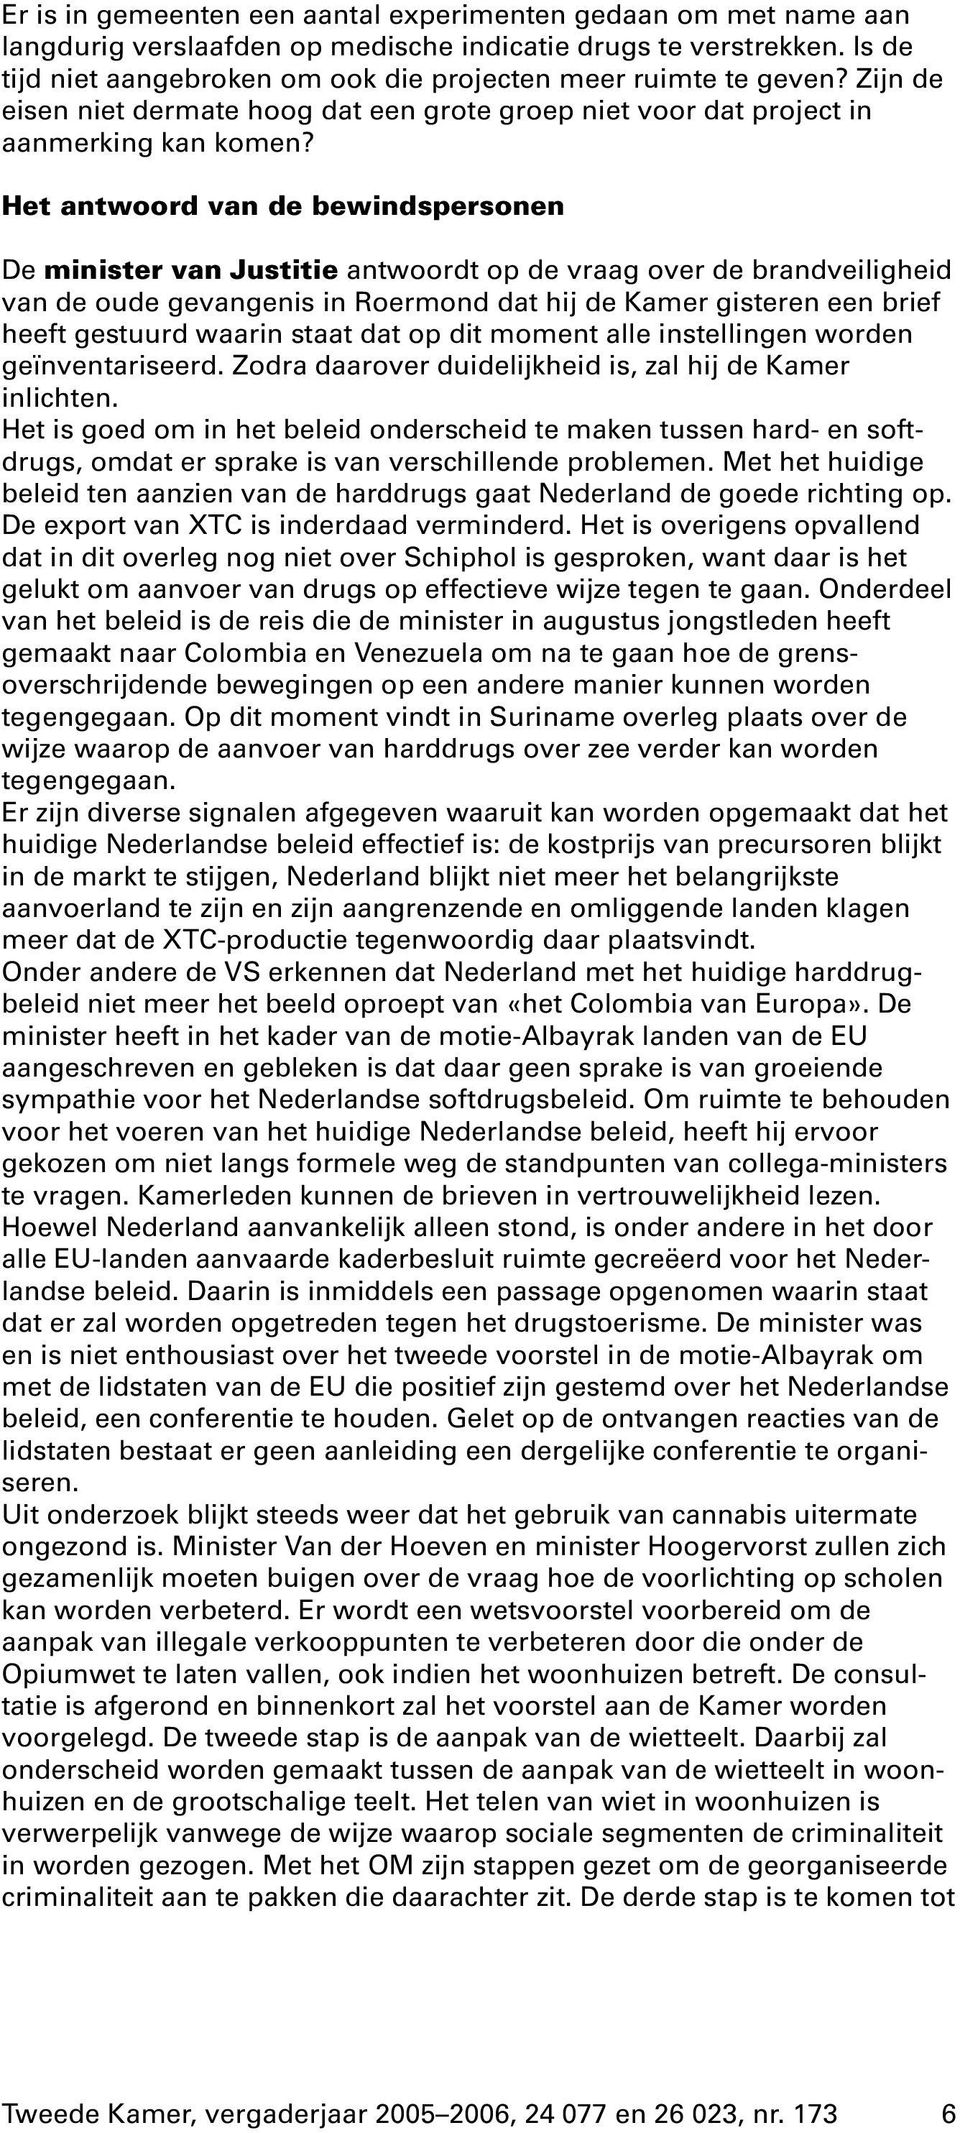 Het antwoord van de bewindspersonen De minister van Justitie antwoordt op de vraag over de brandveiligheid van de oude gevangenis in Roermond dat hij de Kamer gisteren een brief heeft gestuurd waarin